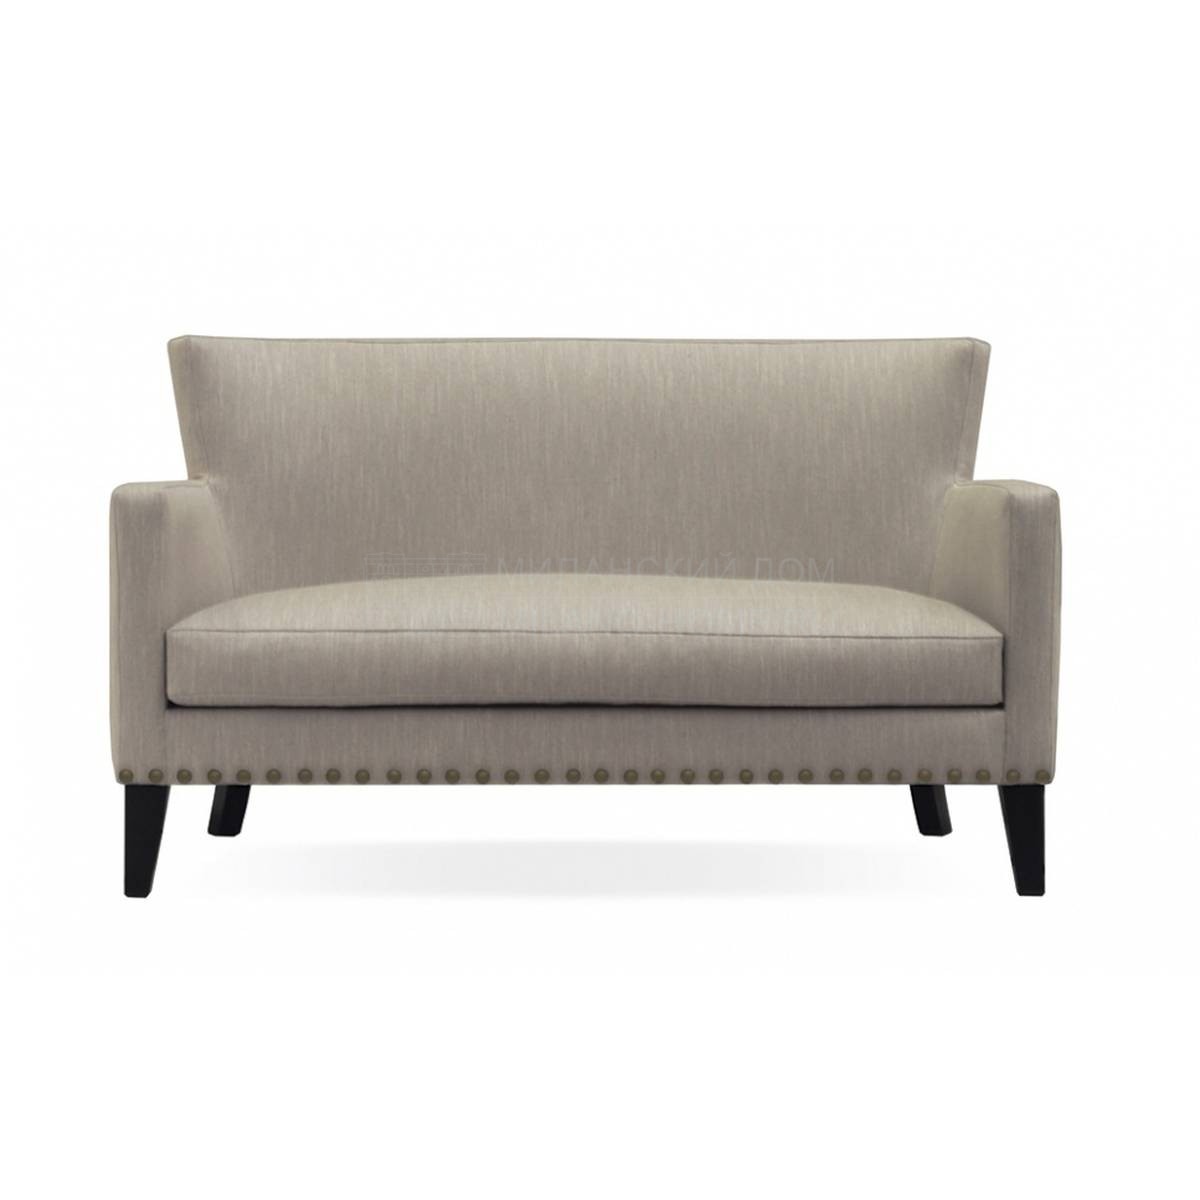 Прямой диван Carol/sofa из Испании фабрики MANUEL LARRAGA